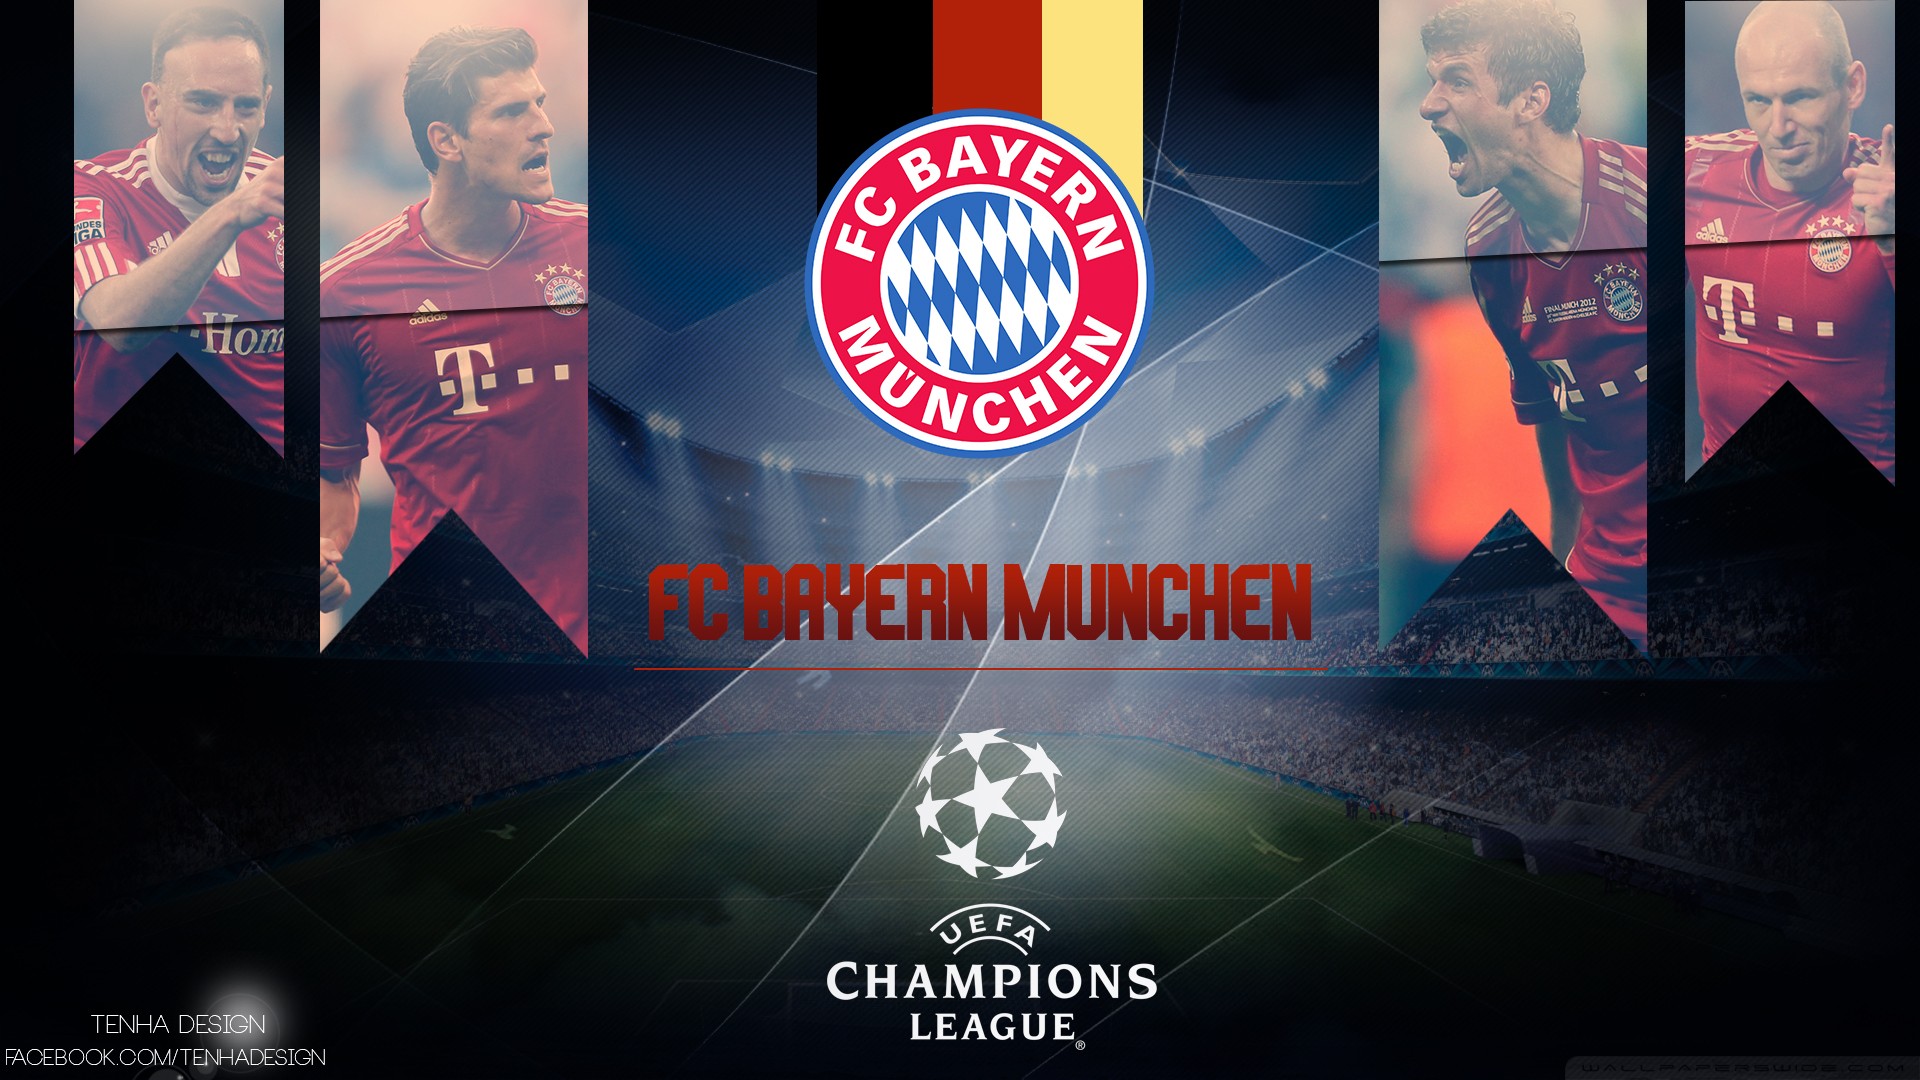 sports, soccer, Champions League, football teams, Bayern, Uefa Champions League, bayern munich, Bundesliga, Bayern Munchen, football players - desktop wallpaper